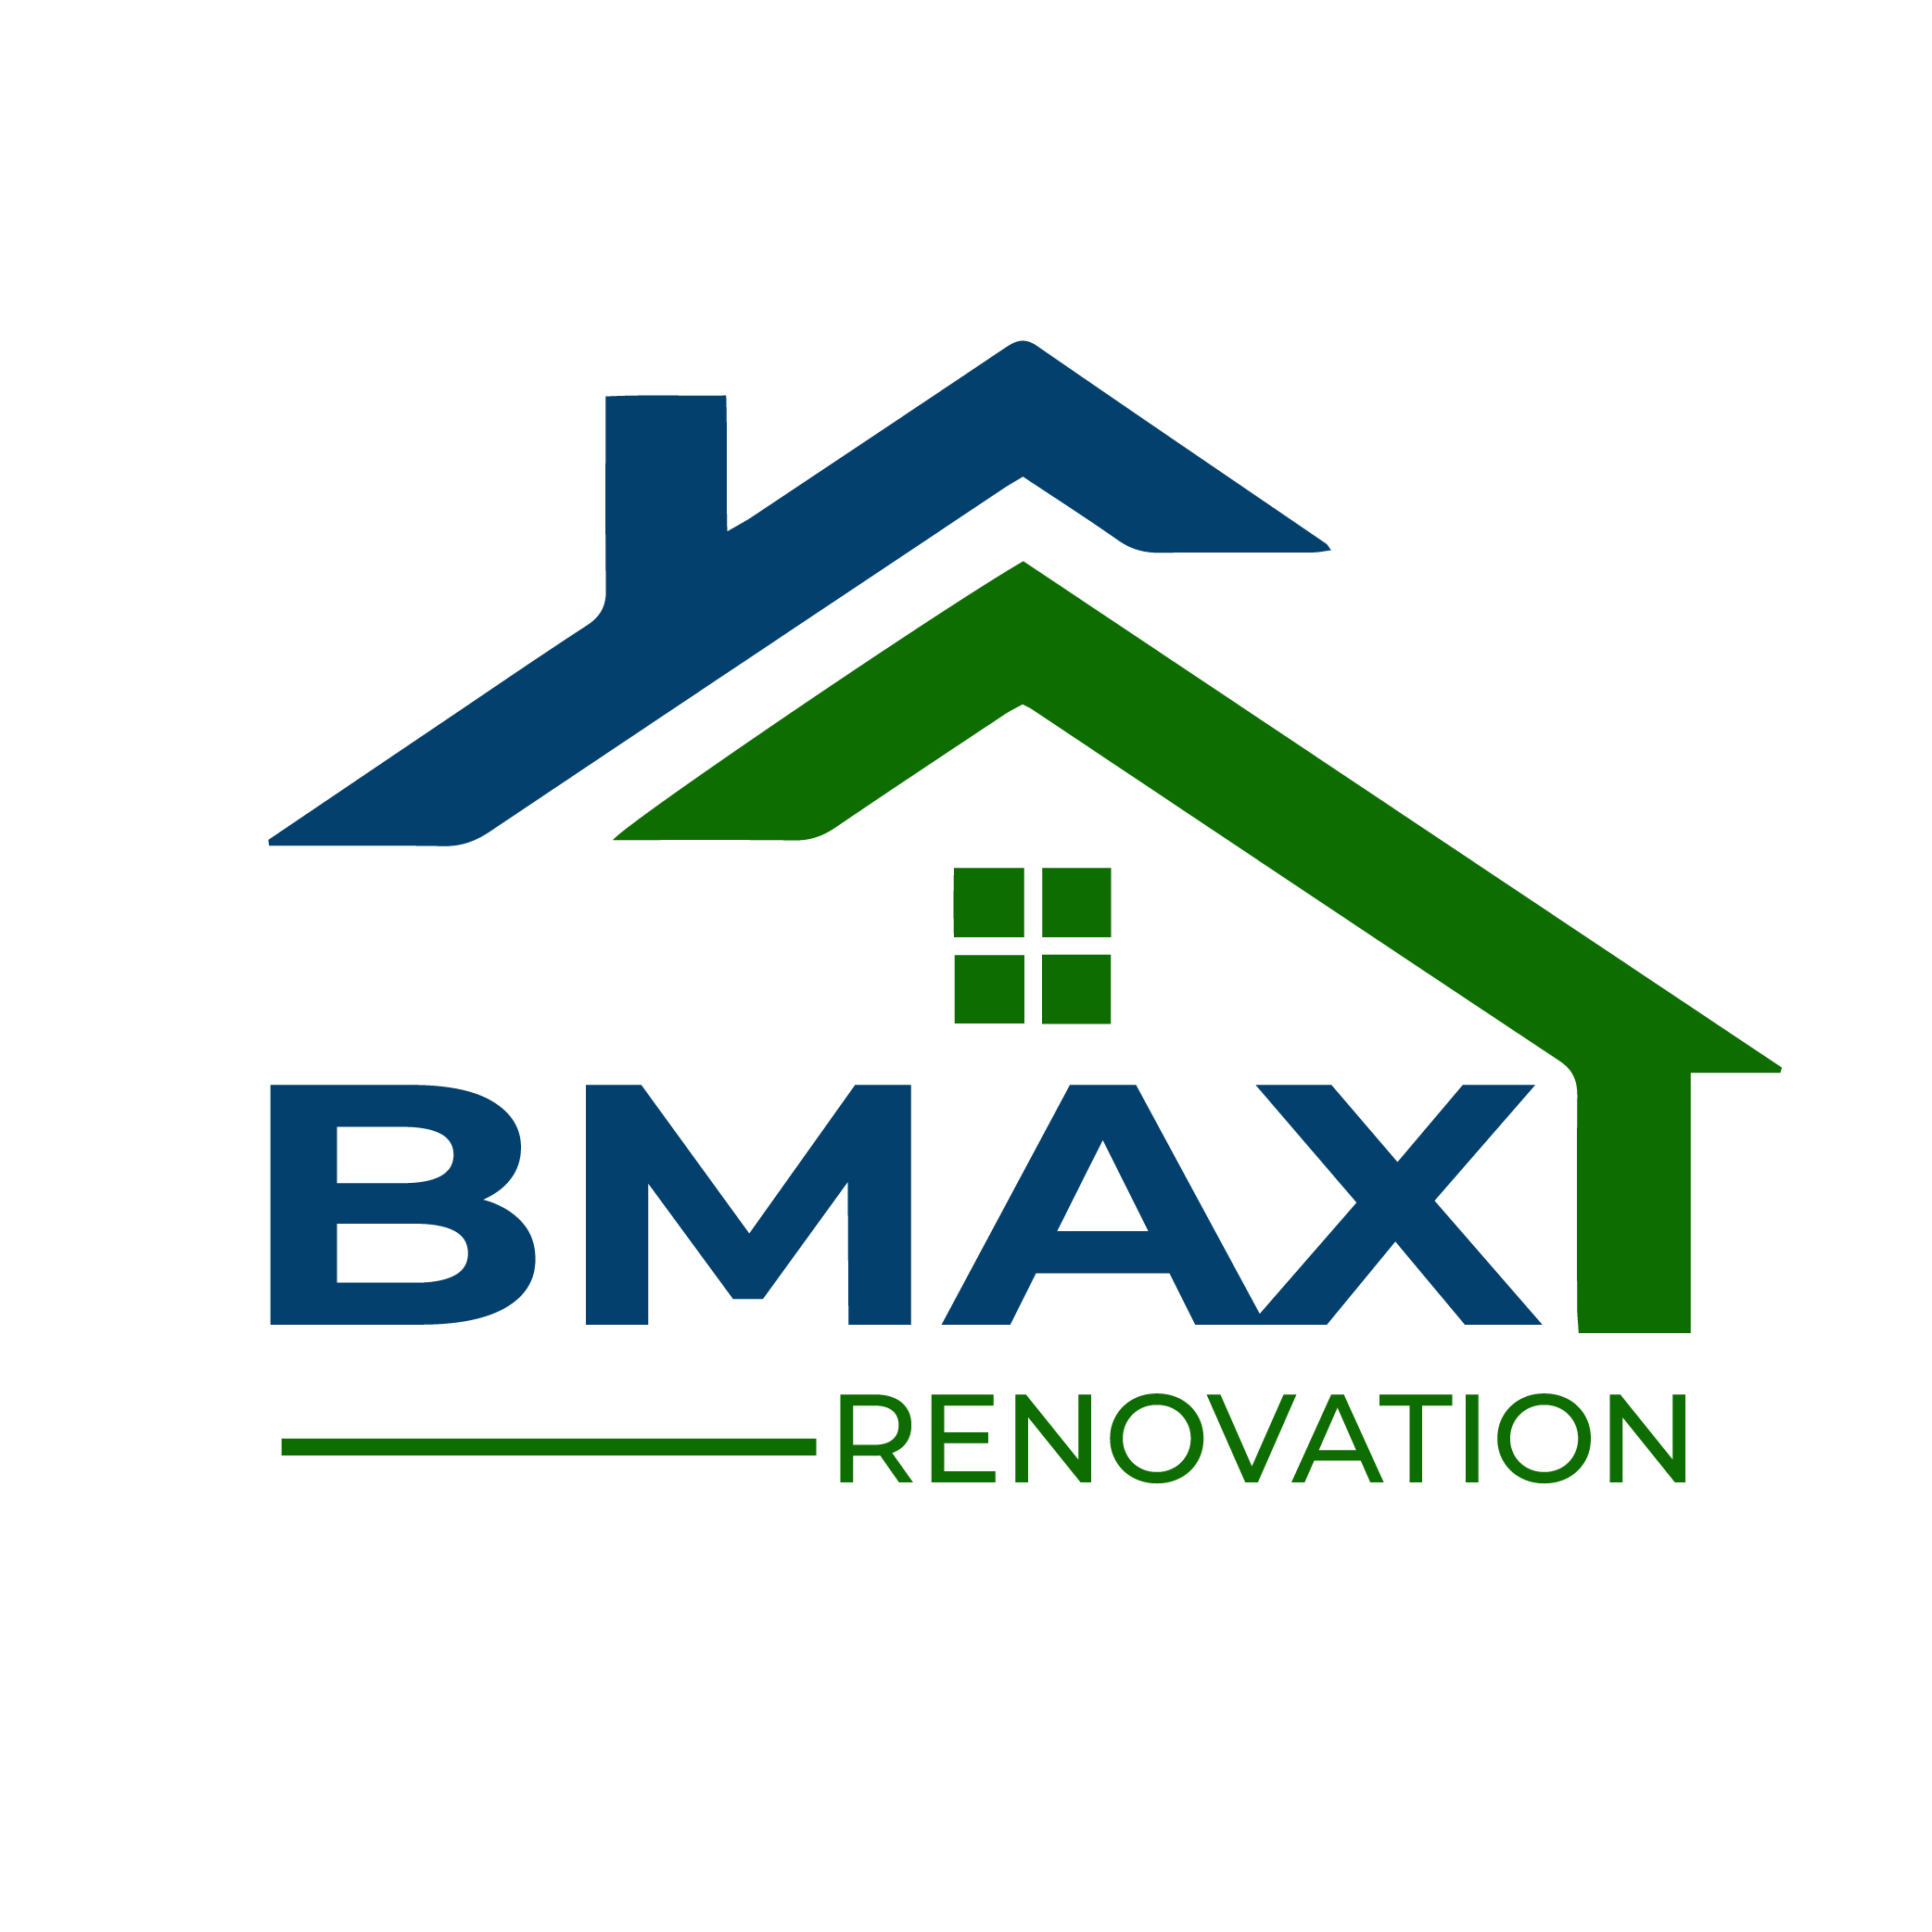 BMAX Renovation